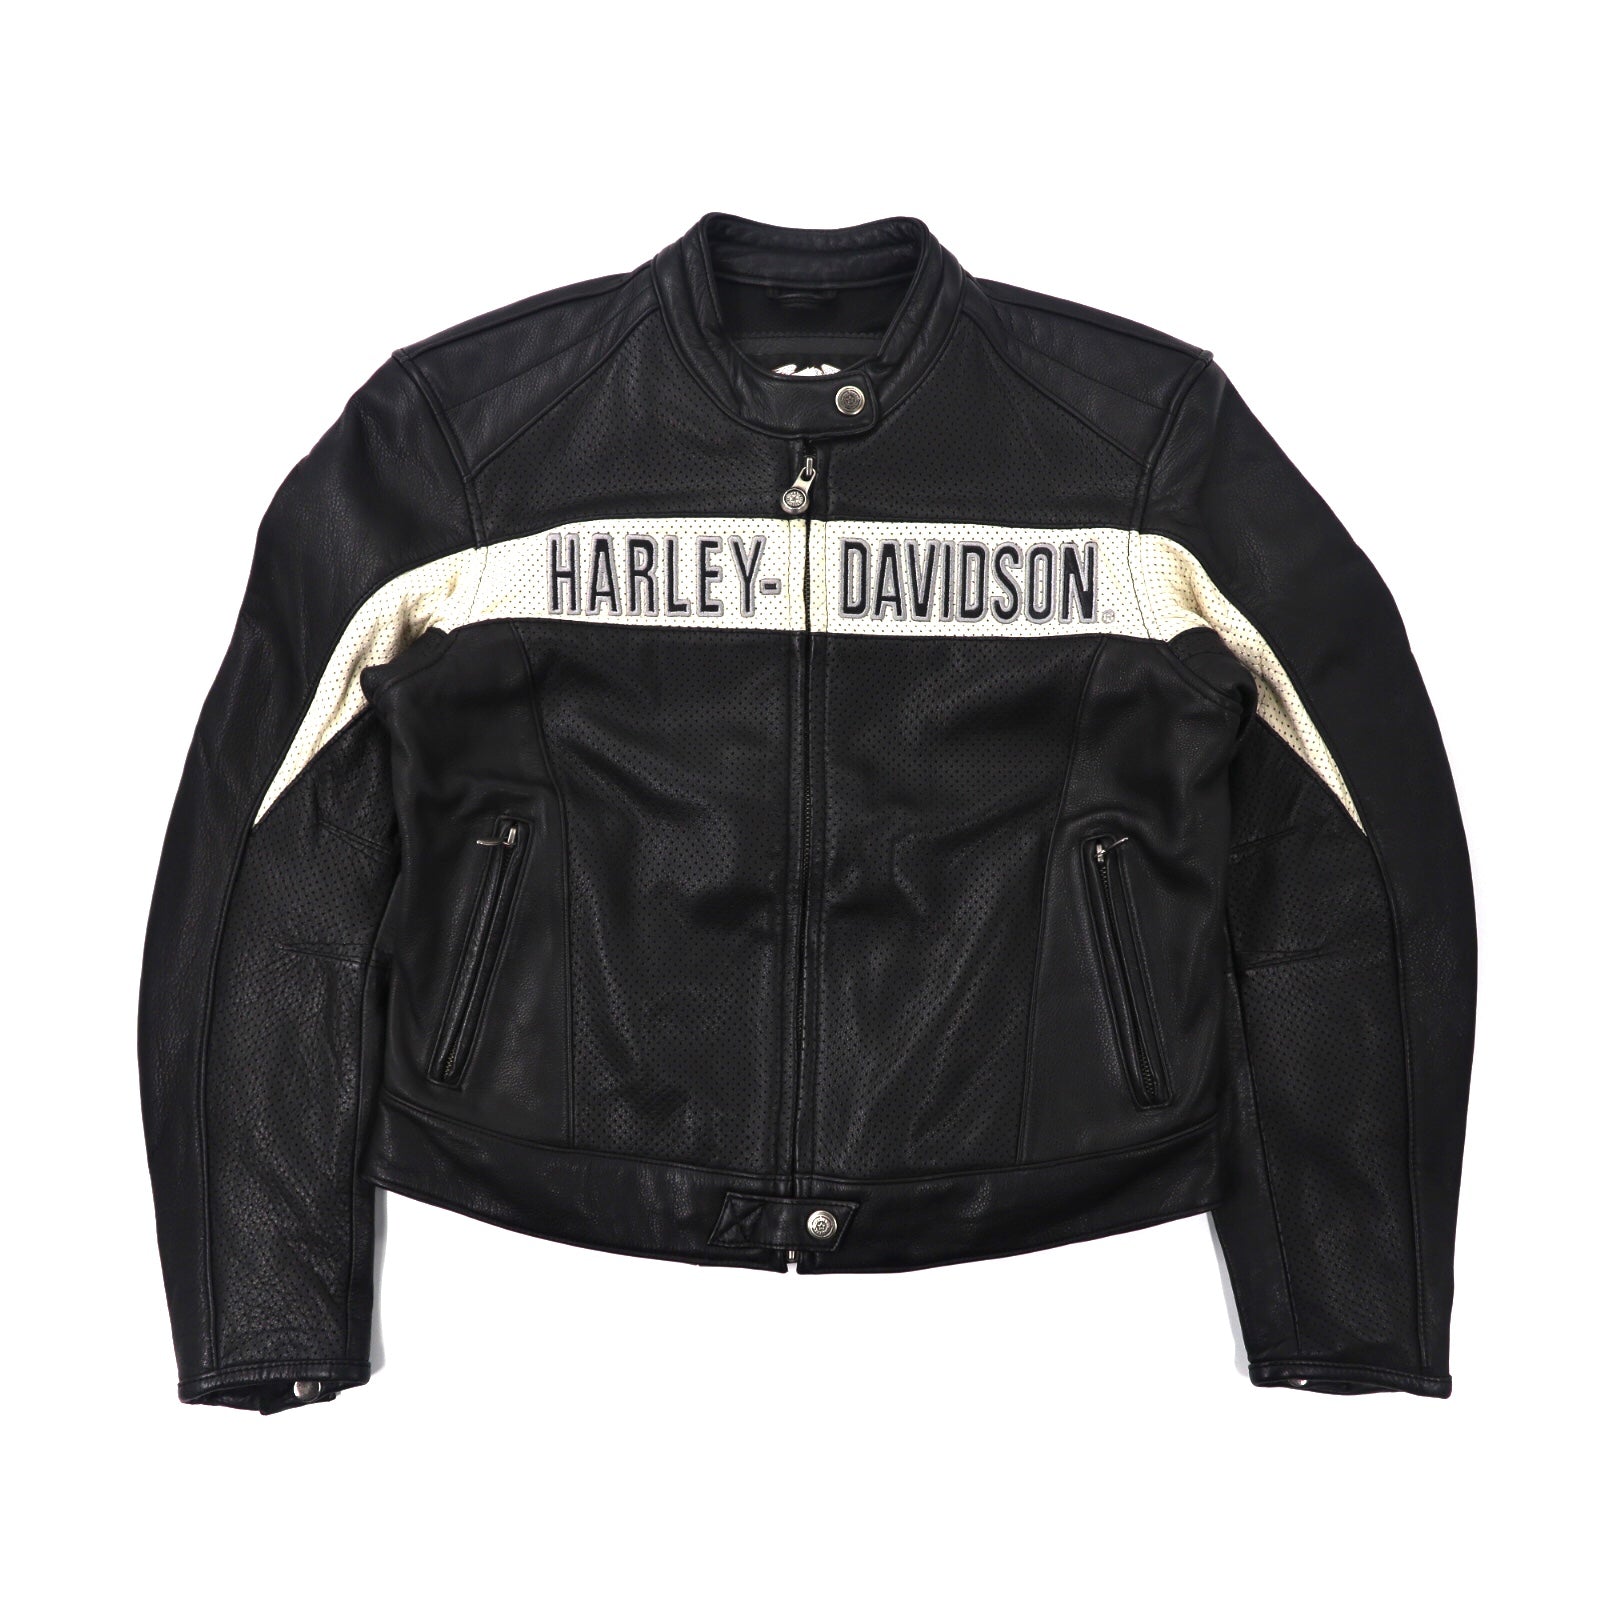 HARLEY DAVIDSON ライダースジャケット L ブラック パンチングレザー